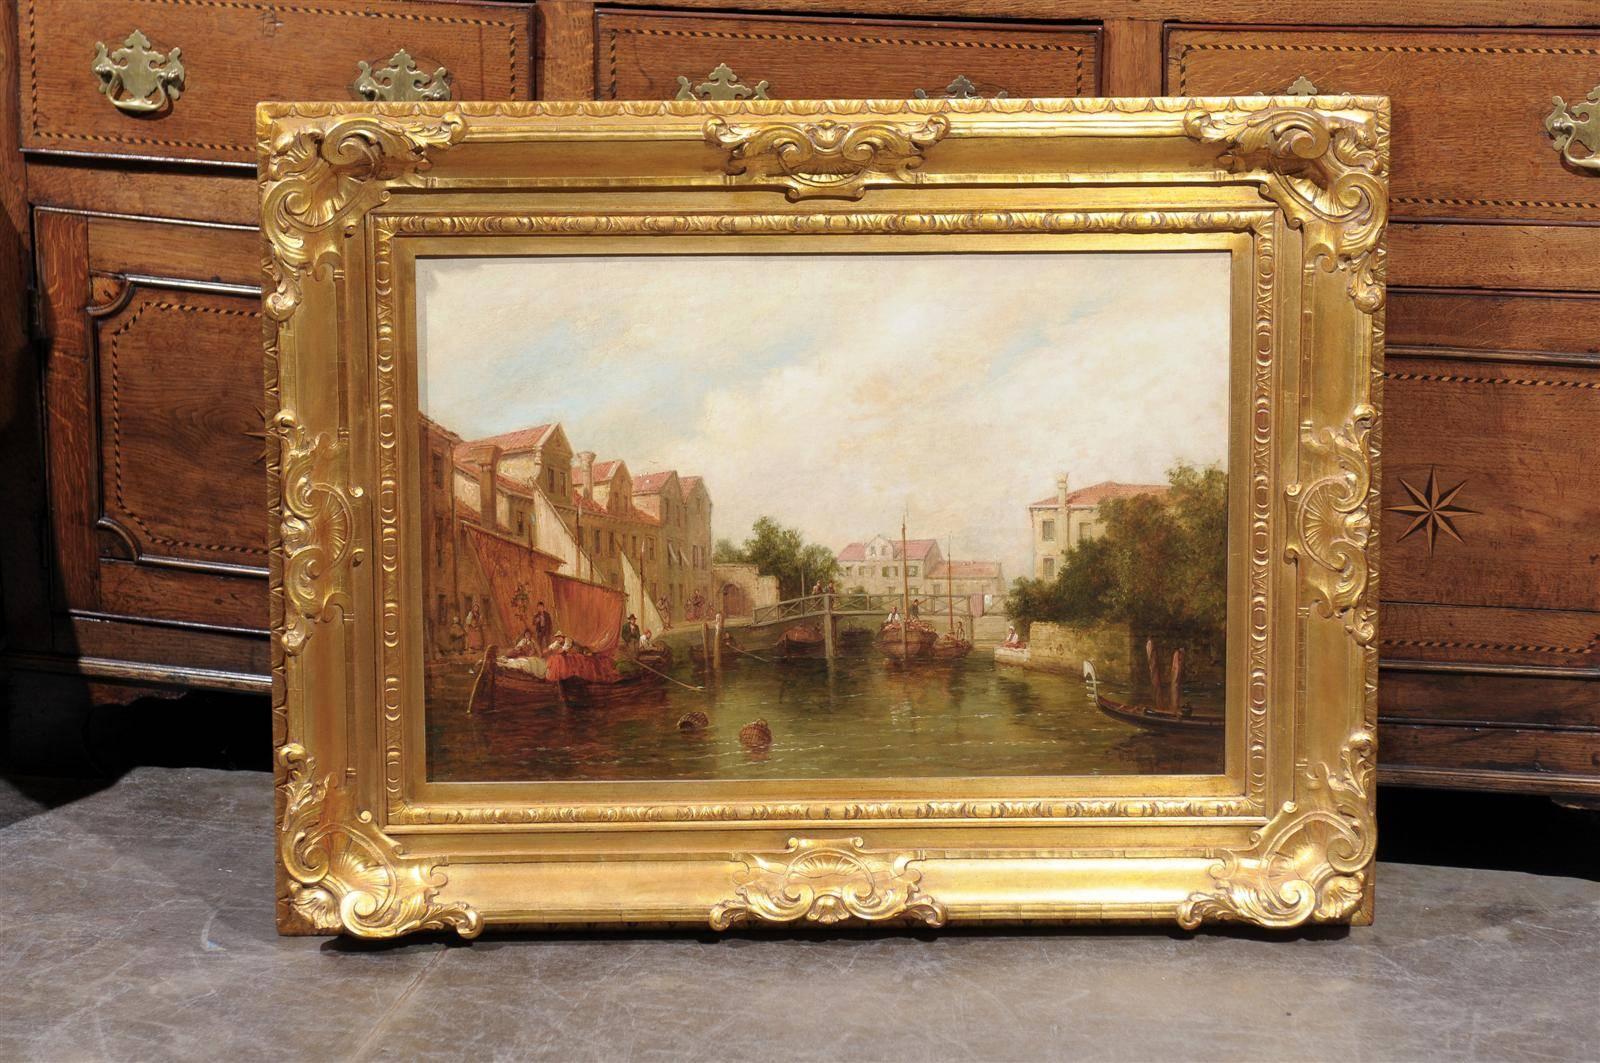 Dieses Ölgemälde auf Leinwand aus dem späten 19. Jahrhundert zeigt eine heitere Szene. In der Mitte der Komposition befindet sich ein belebter Kanal, mit einer Holzbrücke im Hintergrund. Entlang des Kanals gehen Fußgänger, darunter eine Mutter mit